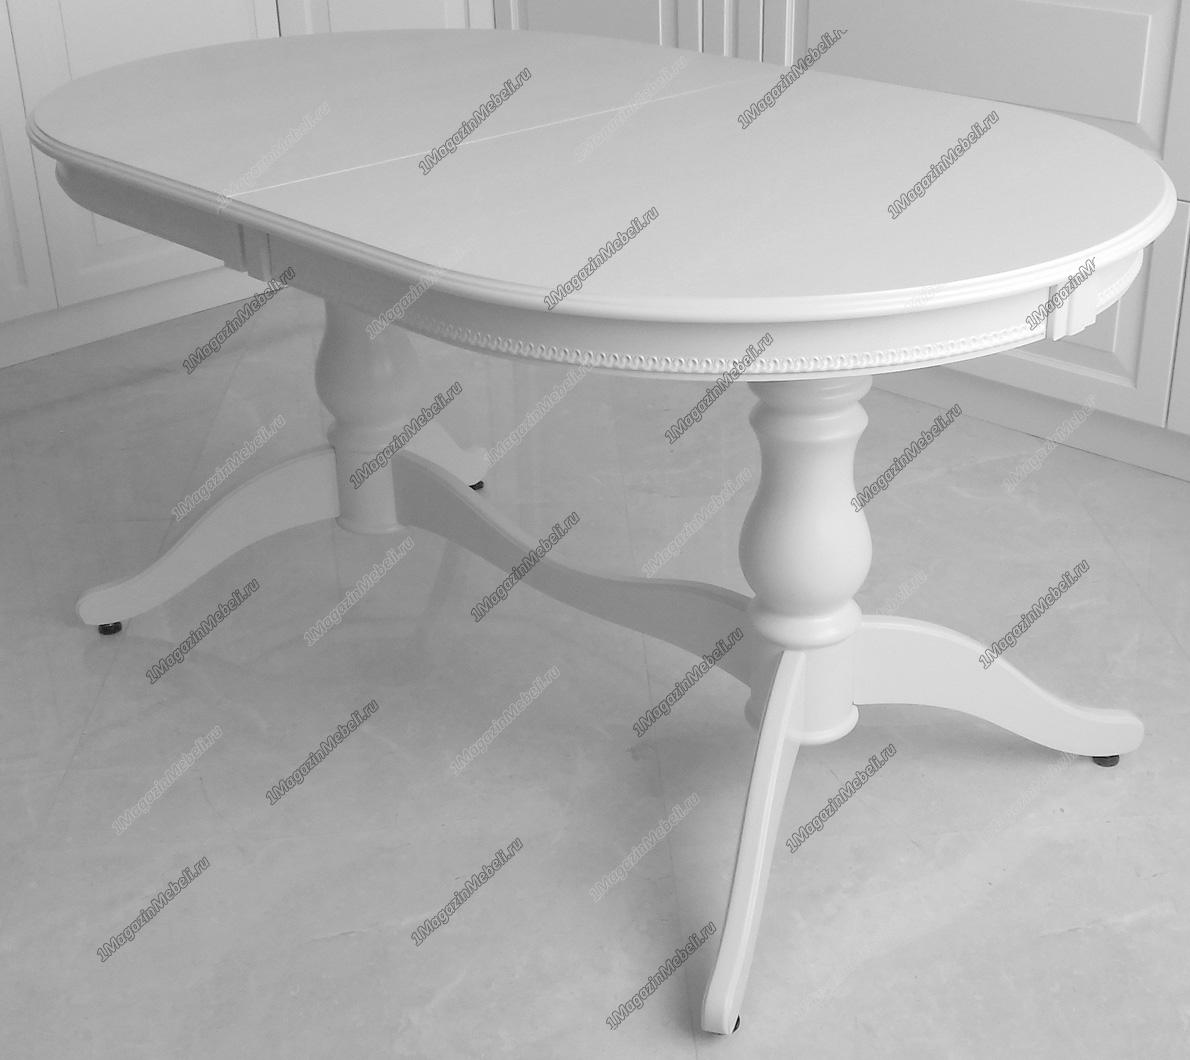 Стол белый деревянный для кухни 150-190 см., овал (арт. М4179)